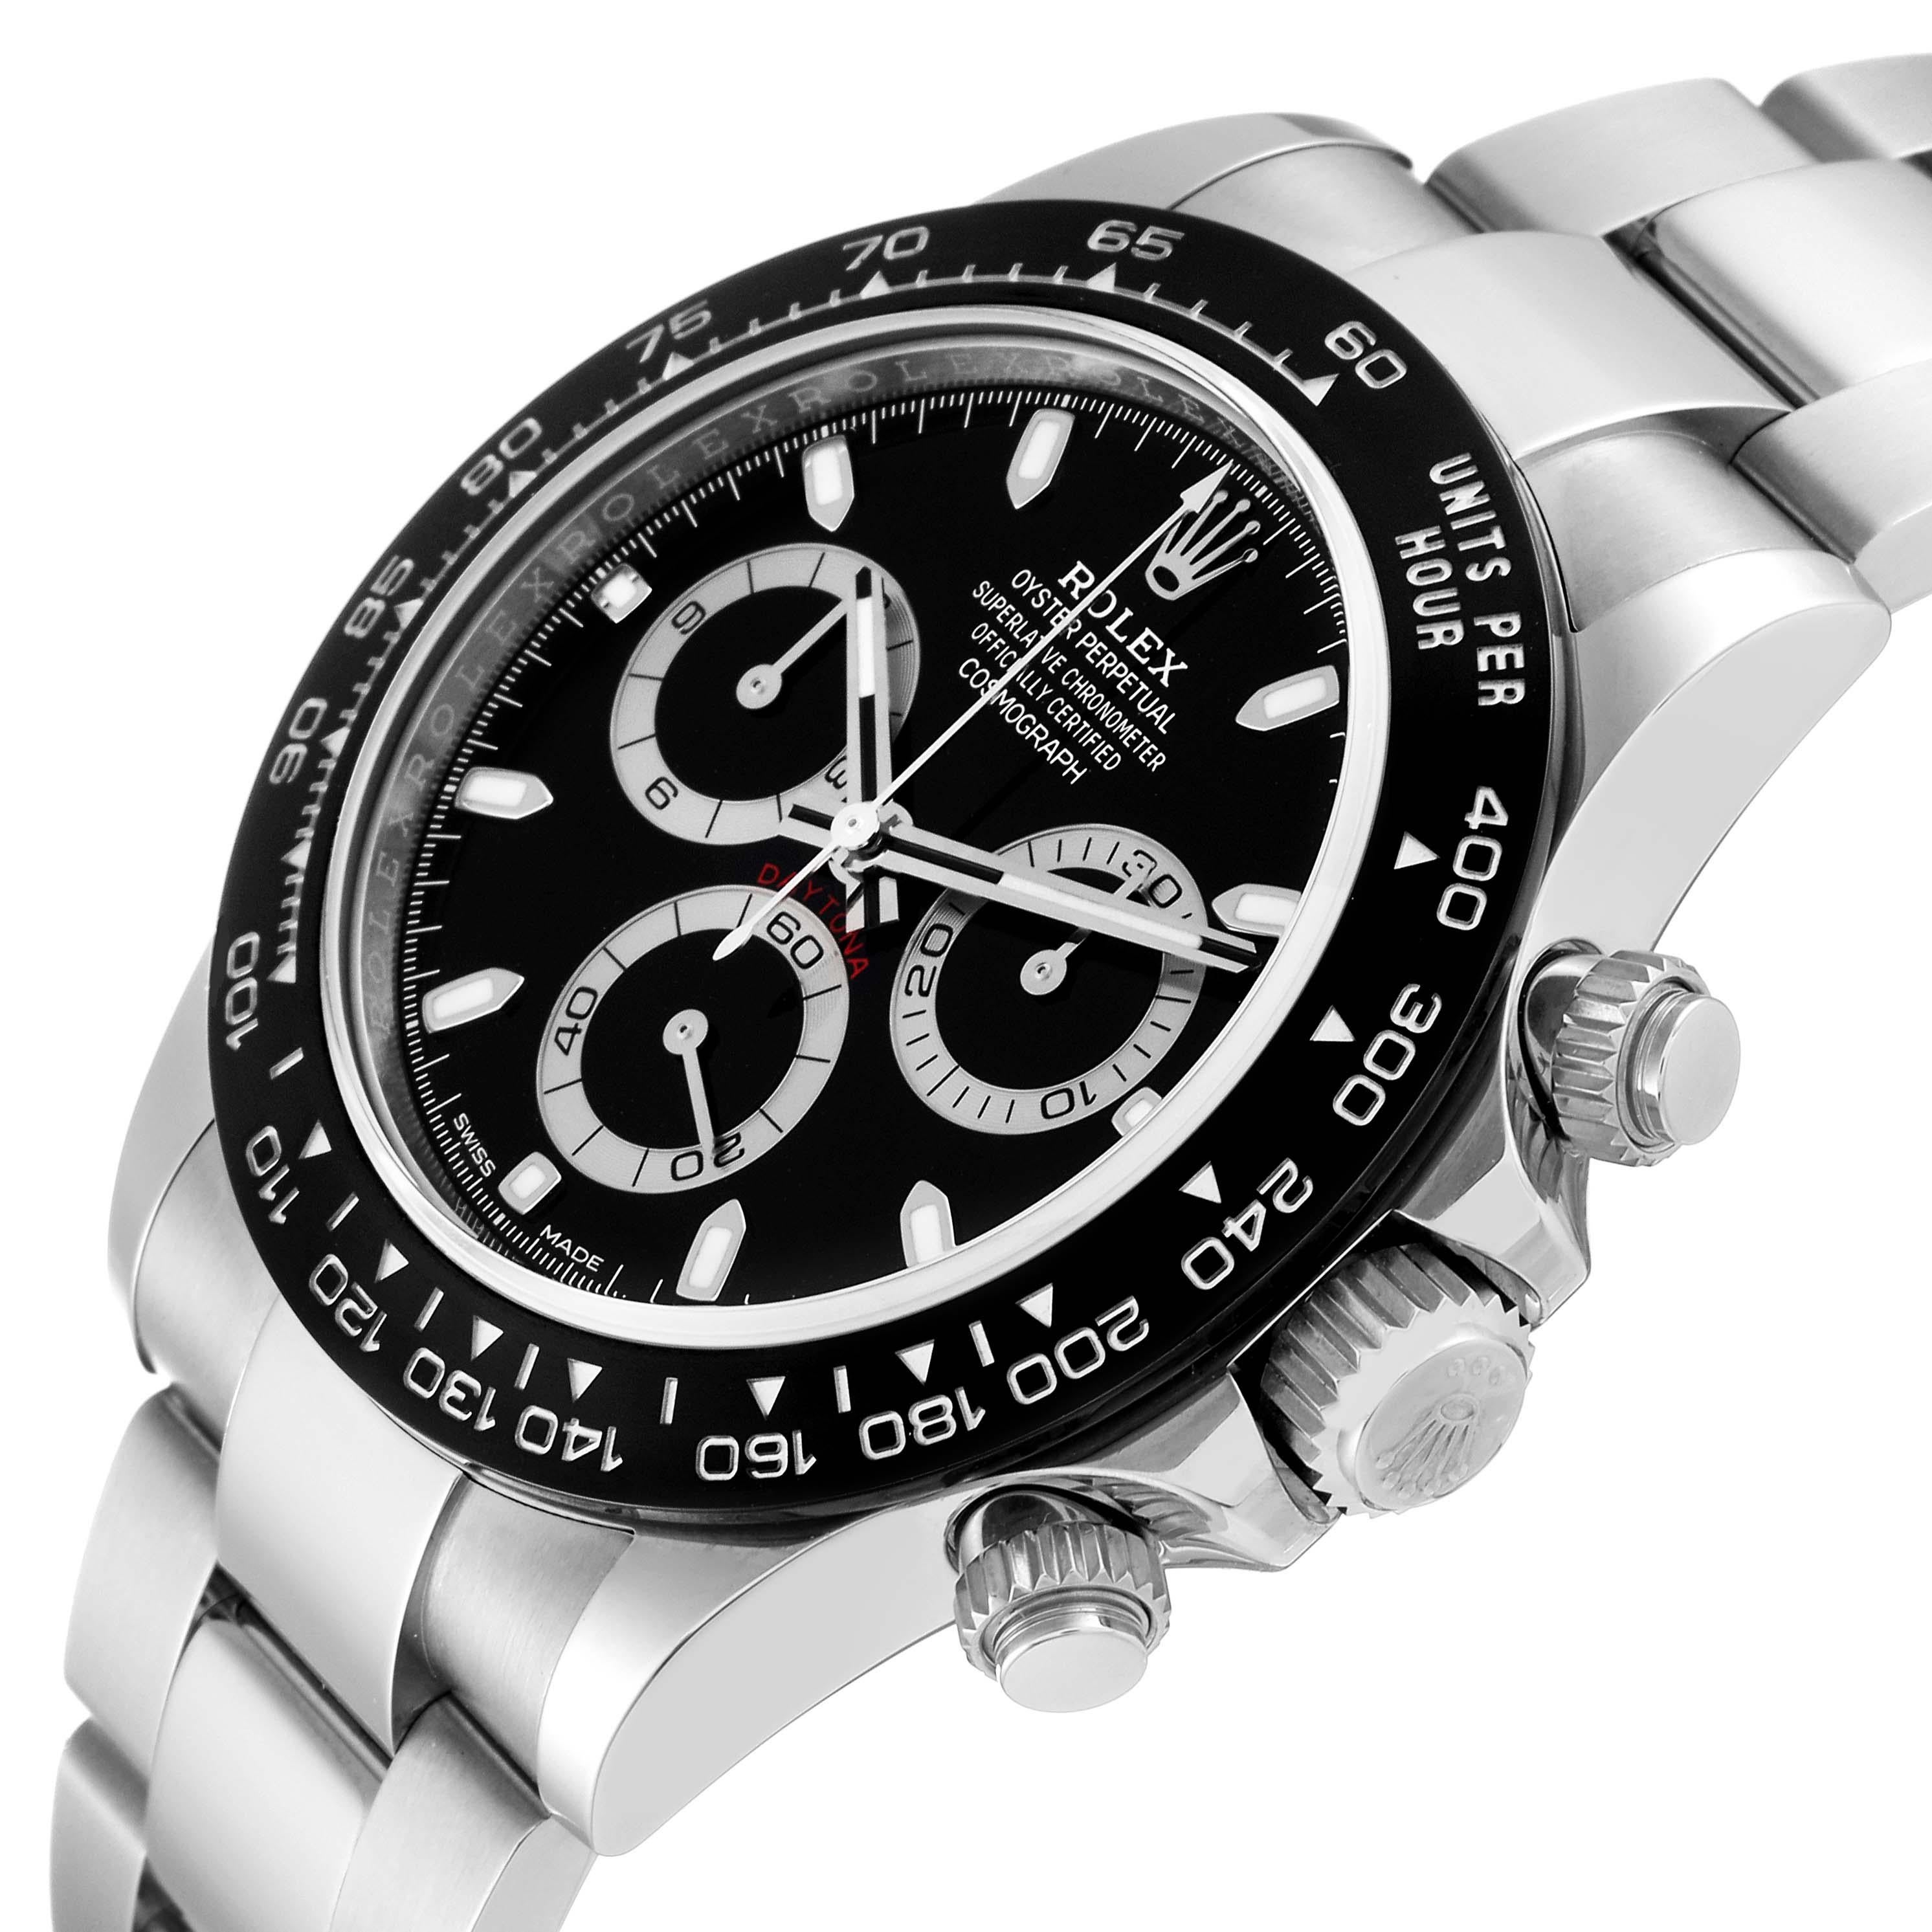 Rolex Cosmograph Daytona Ceramic Bezel Black Dial Steel Mens Watch 116500 Unworn 1